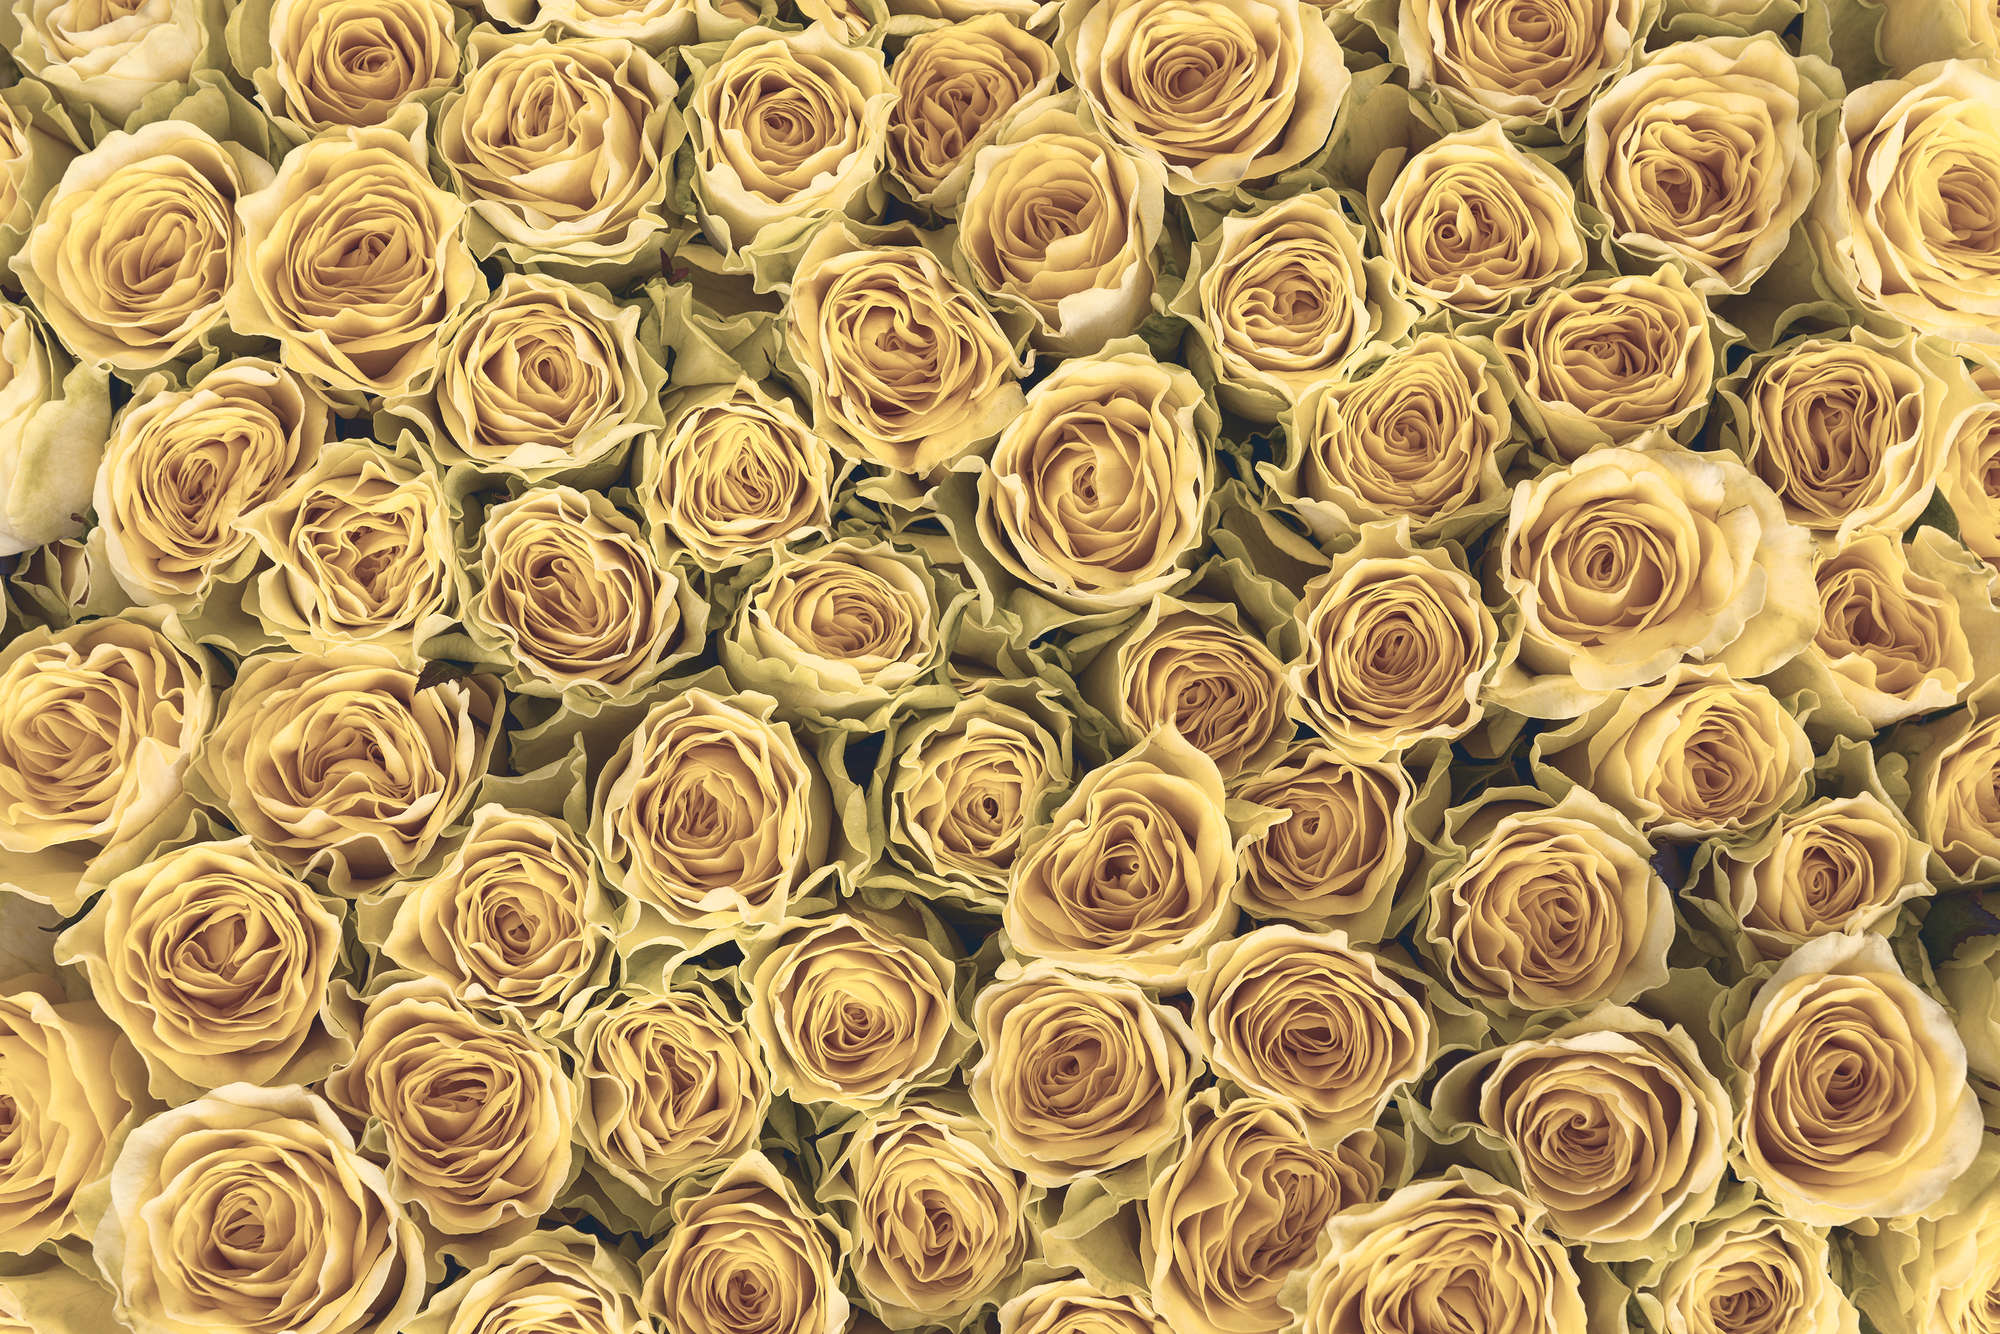             Papier peint végétal Roses dorées sur intissé structuré
        